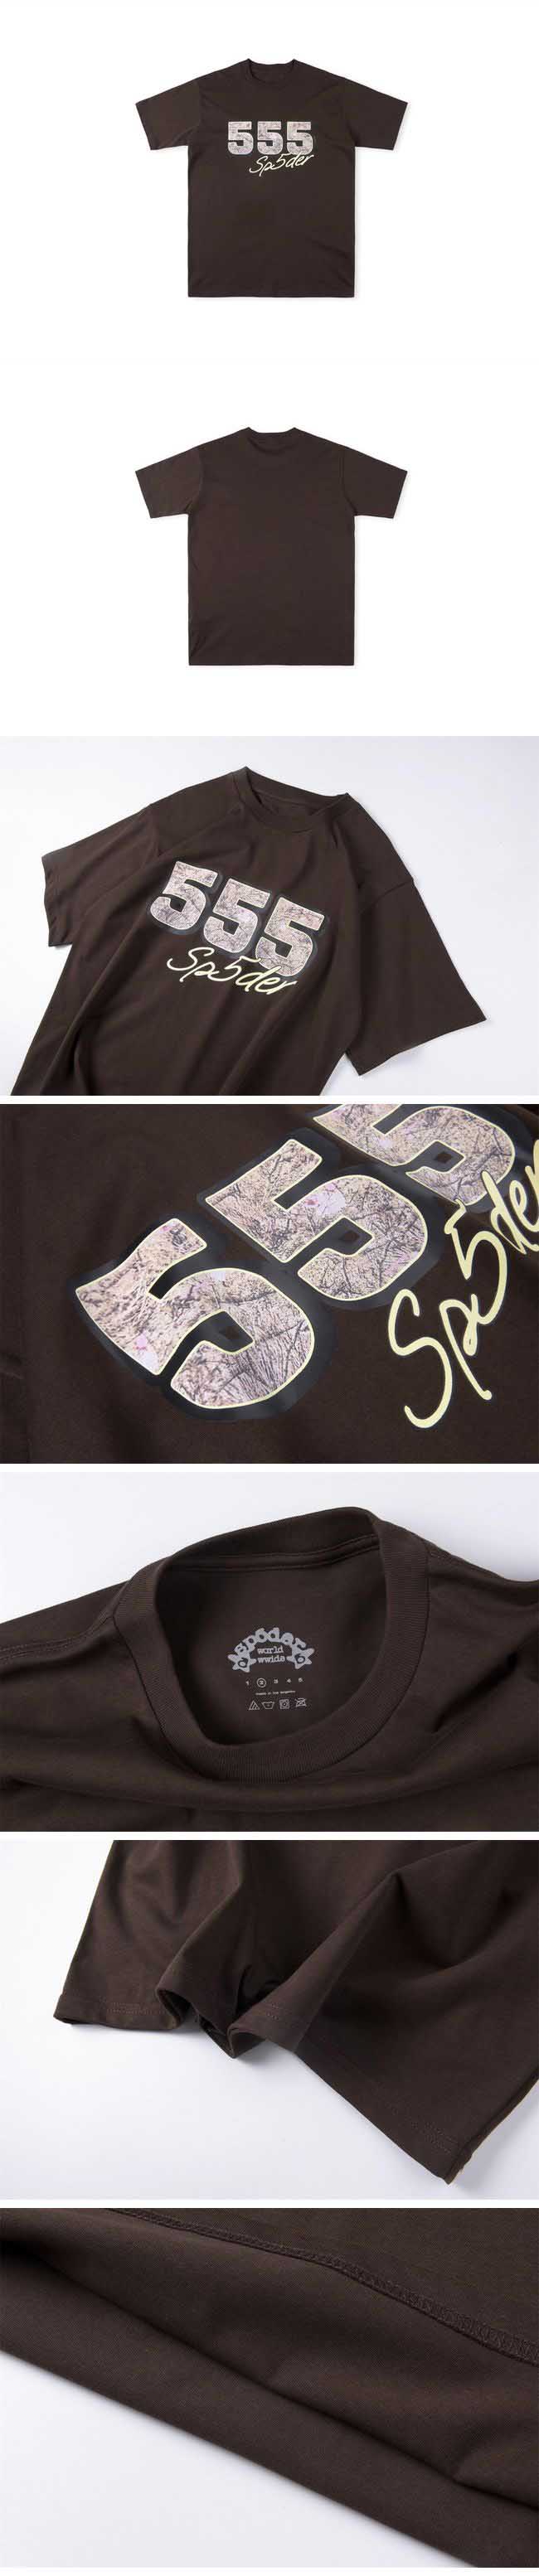 Sp5der 555 Logo Tee スパイダー 555 ロゴ Tシャツ